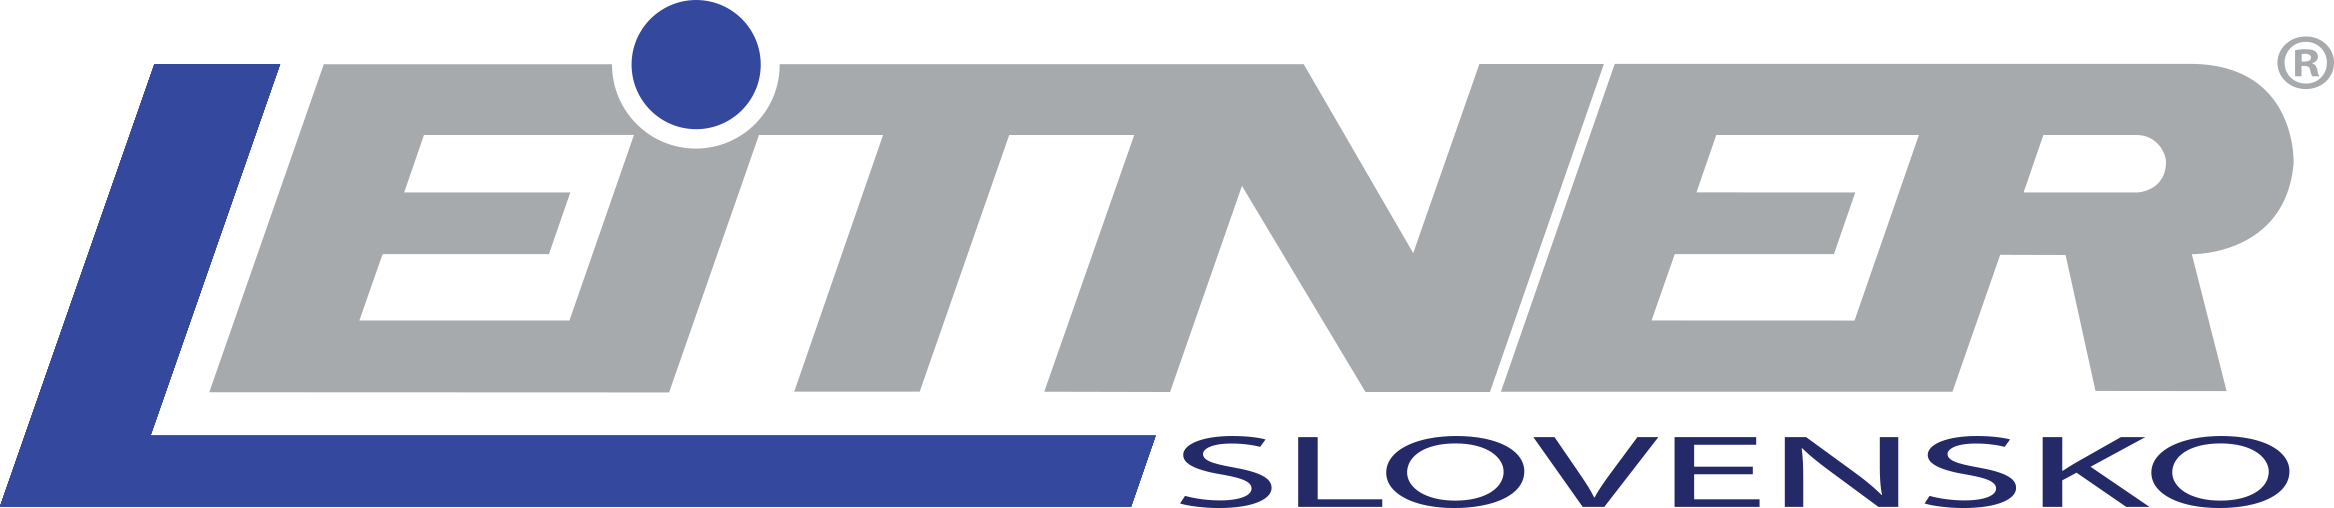 Leitner Slovensko s.r.o. logo